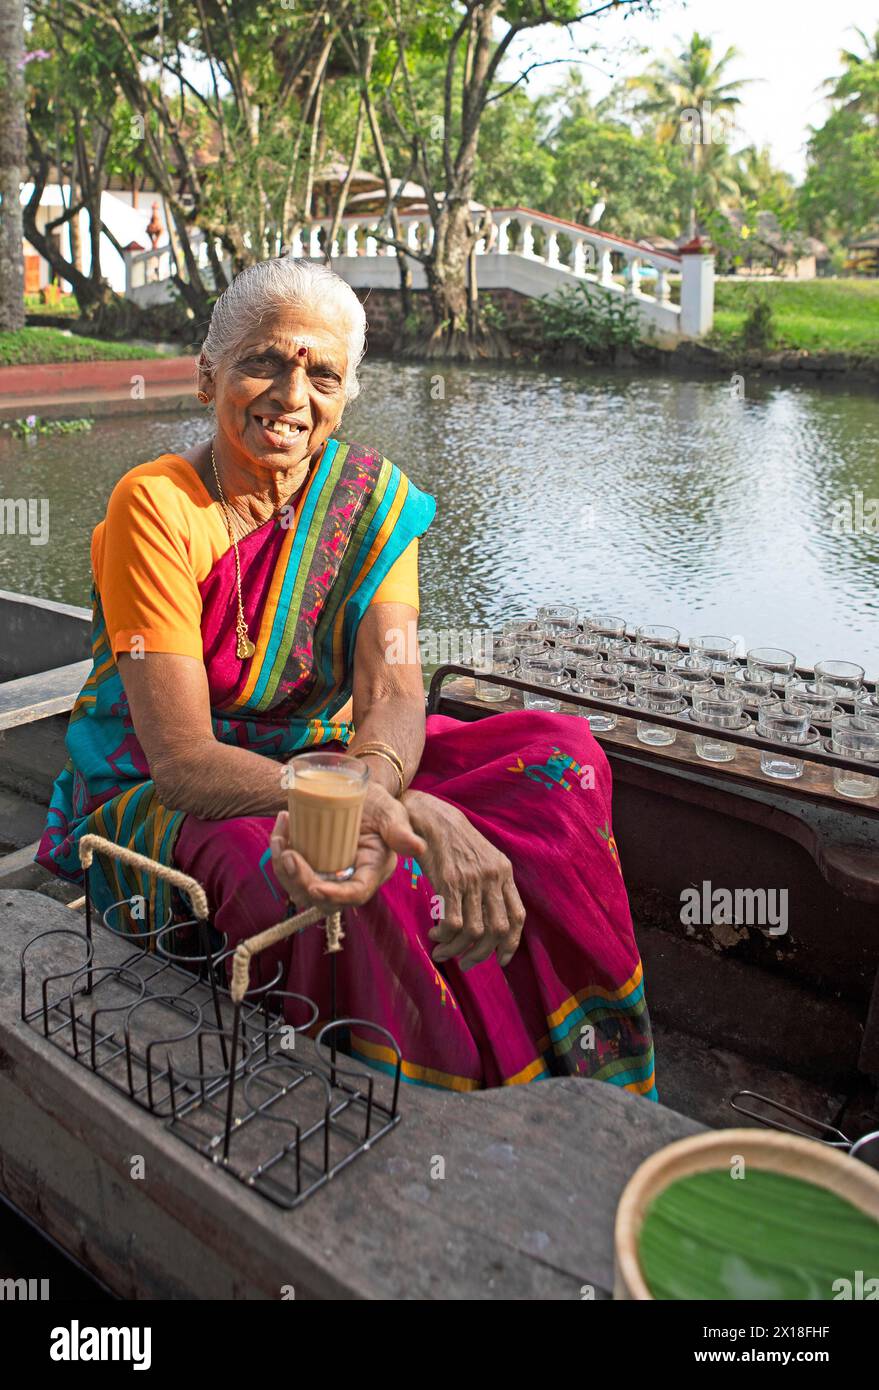 Tealady, 83 ans, montre un thé indien sur son bateau, Backwaters, Kumarakom, Kerala, Inde Banque D'Images